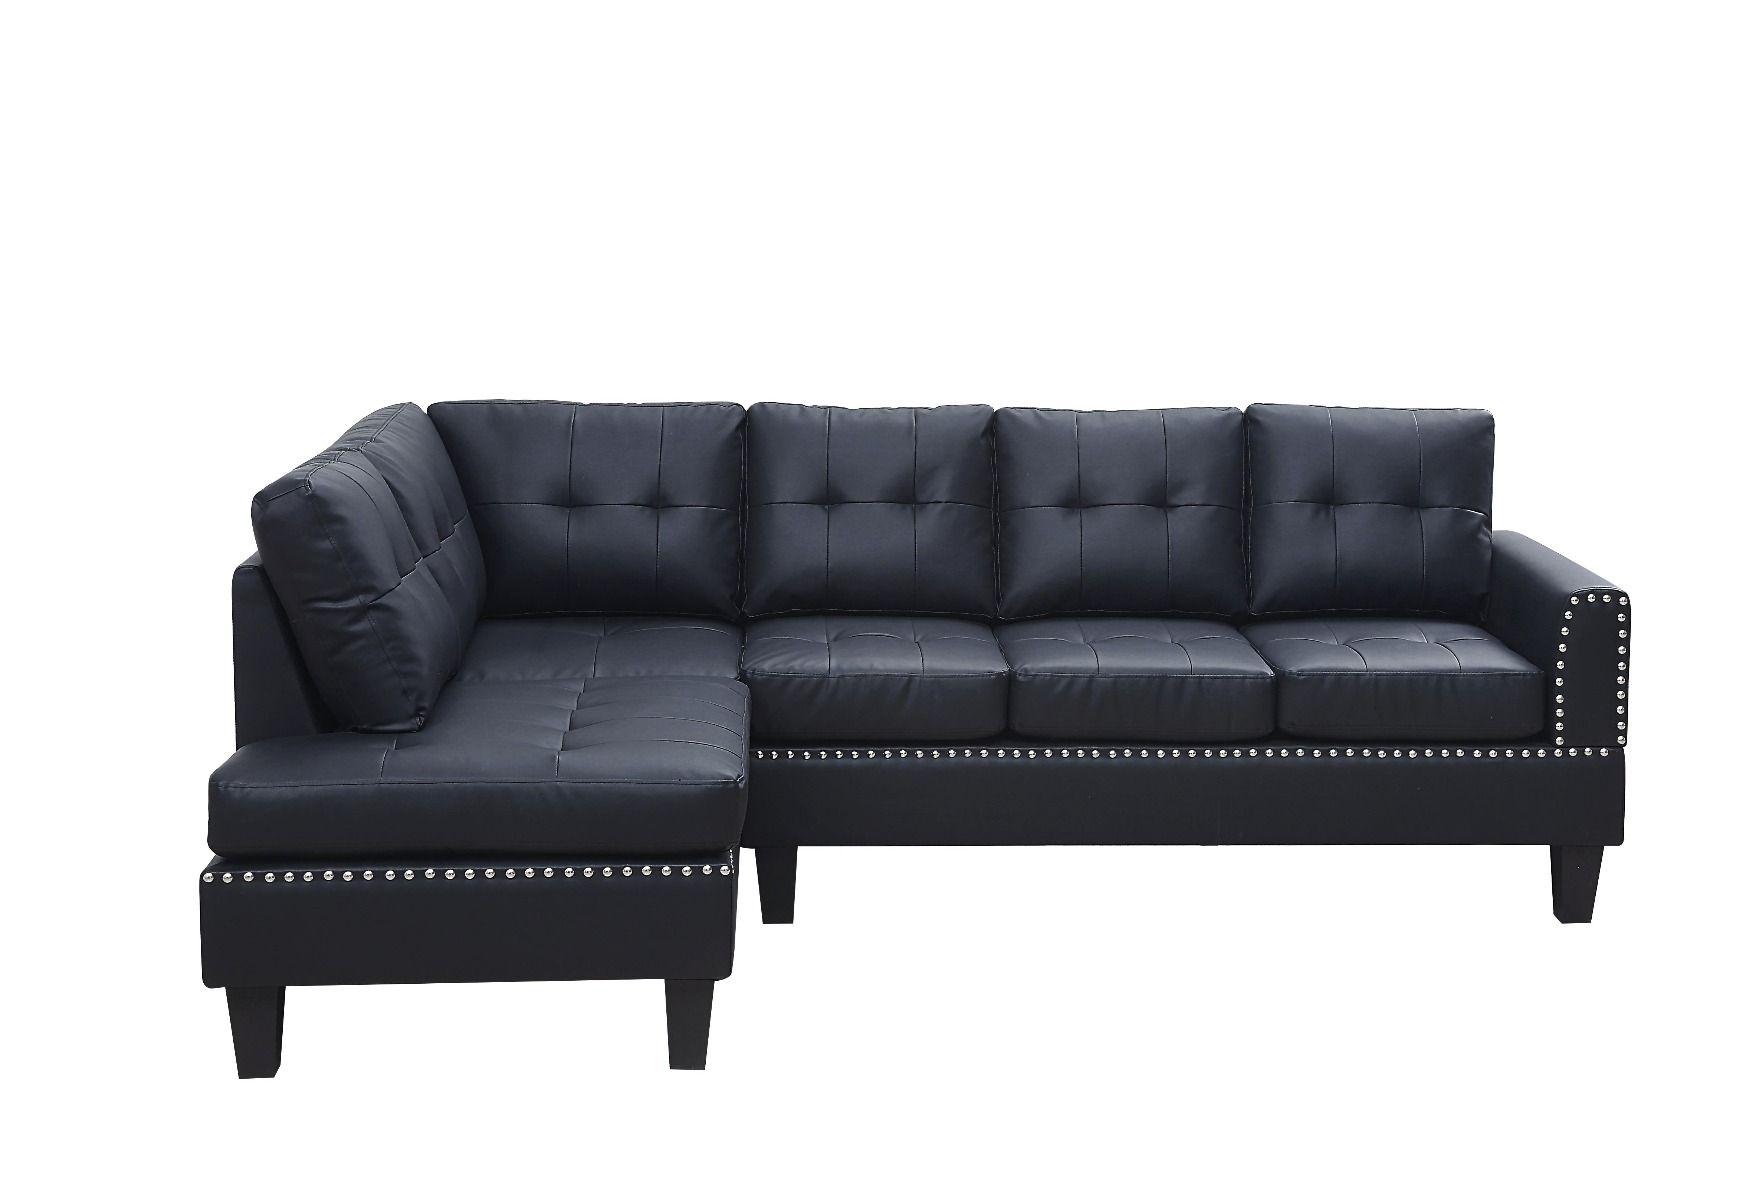 

    
Acme Furniture Jeimmur Sectional Sofa Black 56465-3pcs
